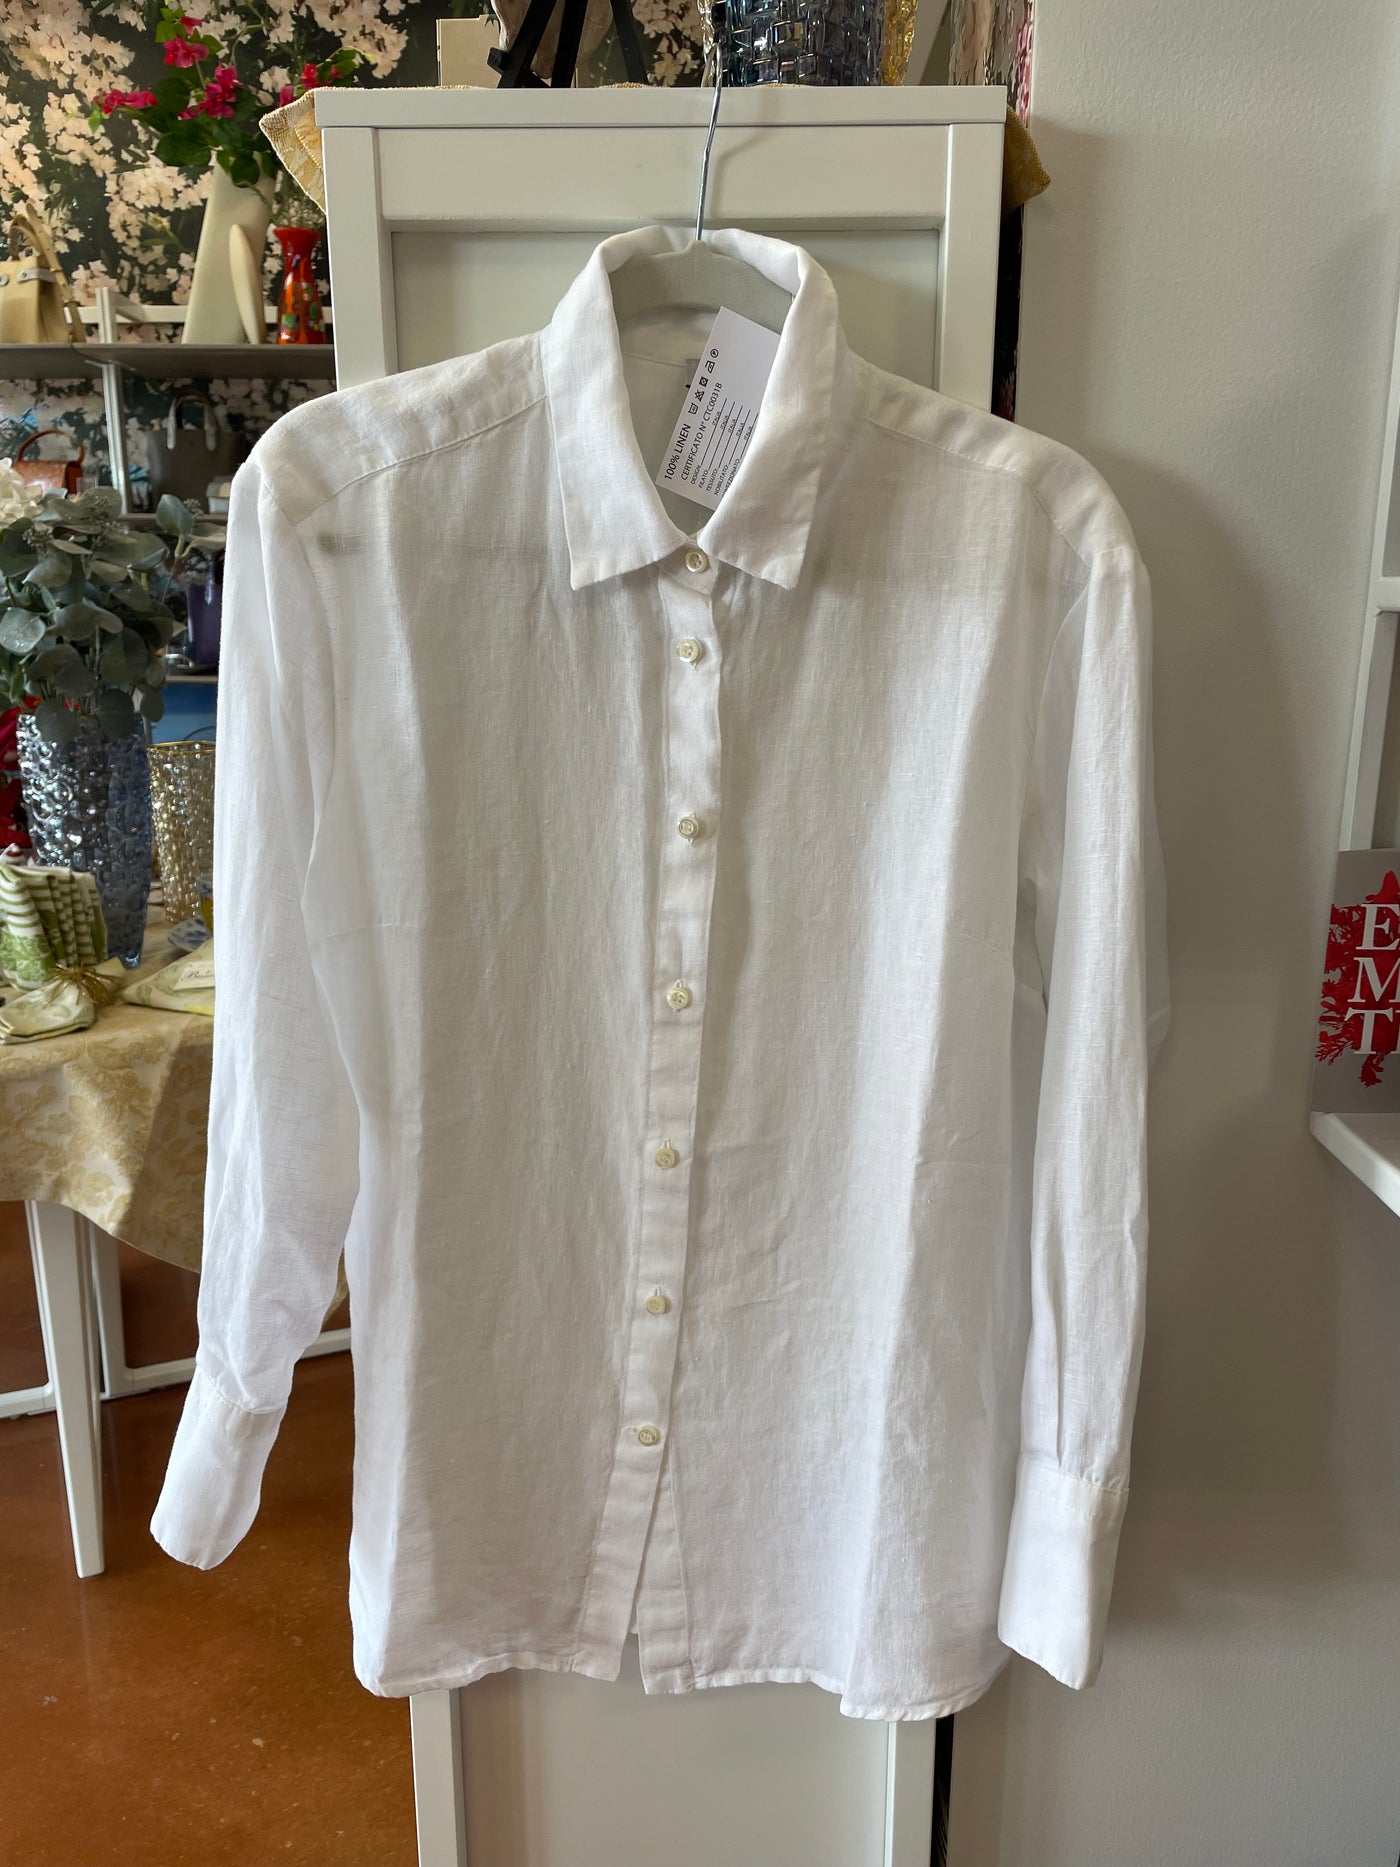 Cascais Oversized Linen Shirt